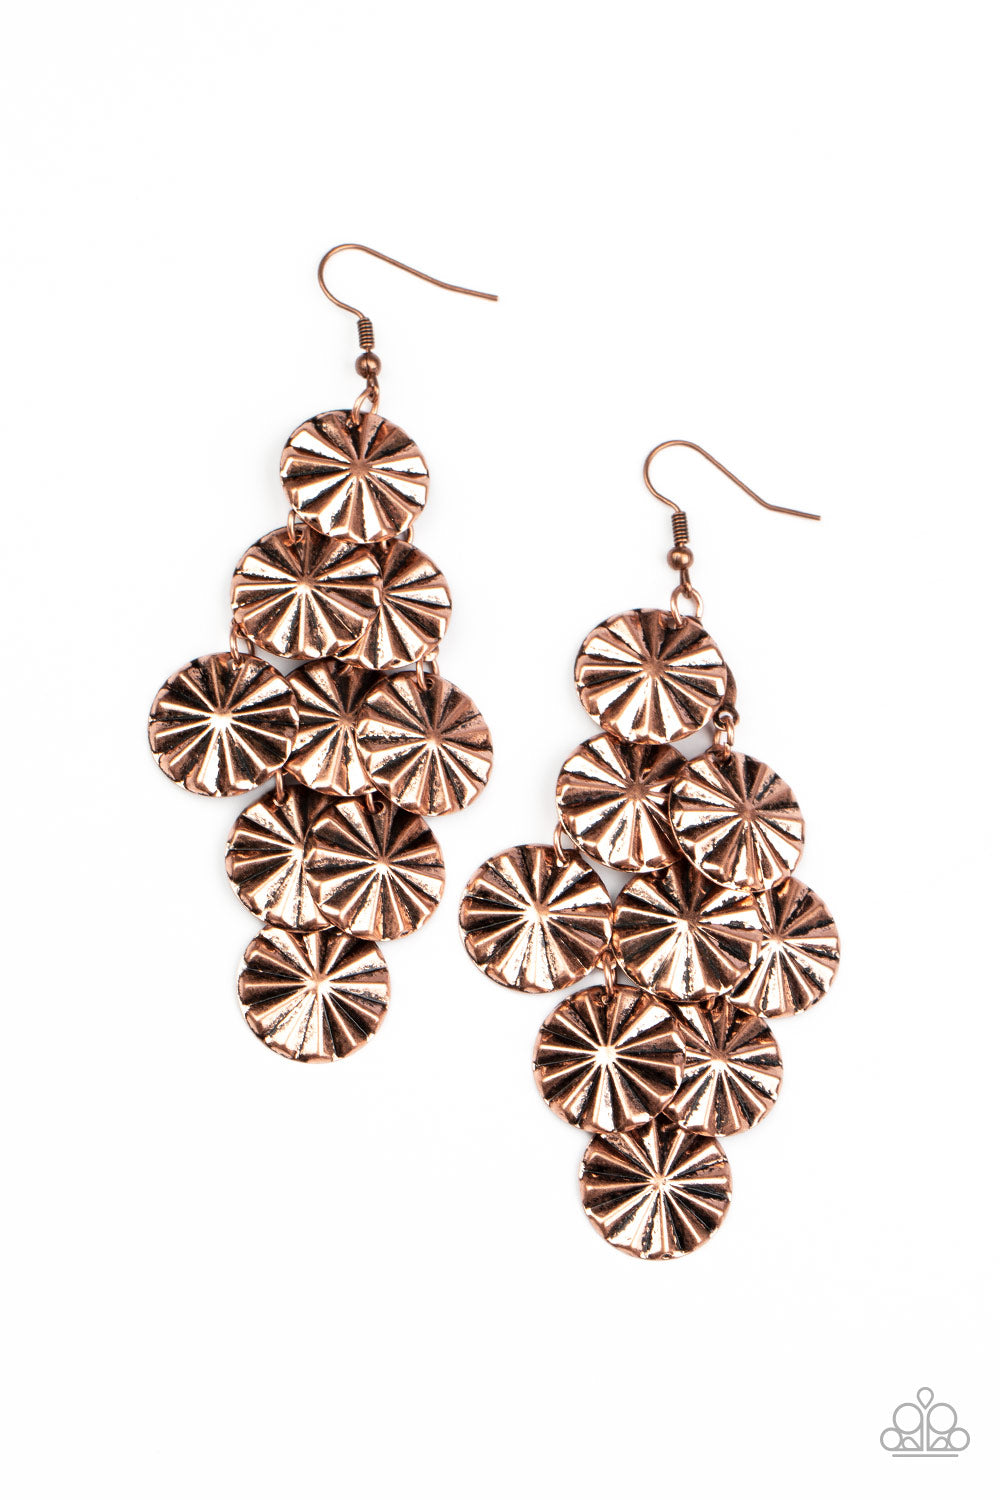 Star Spangled Shine - Copper Earrings